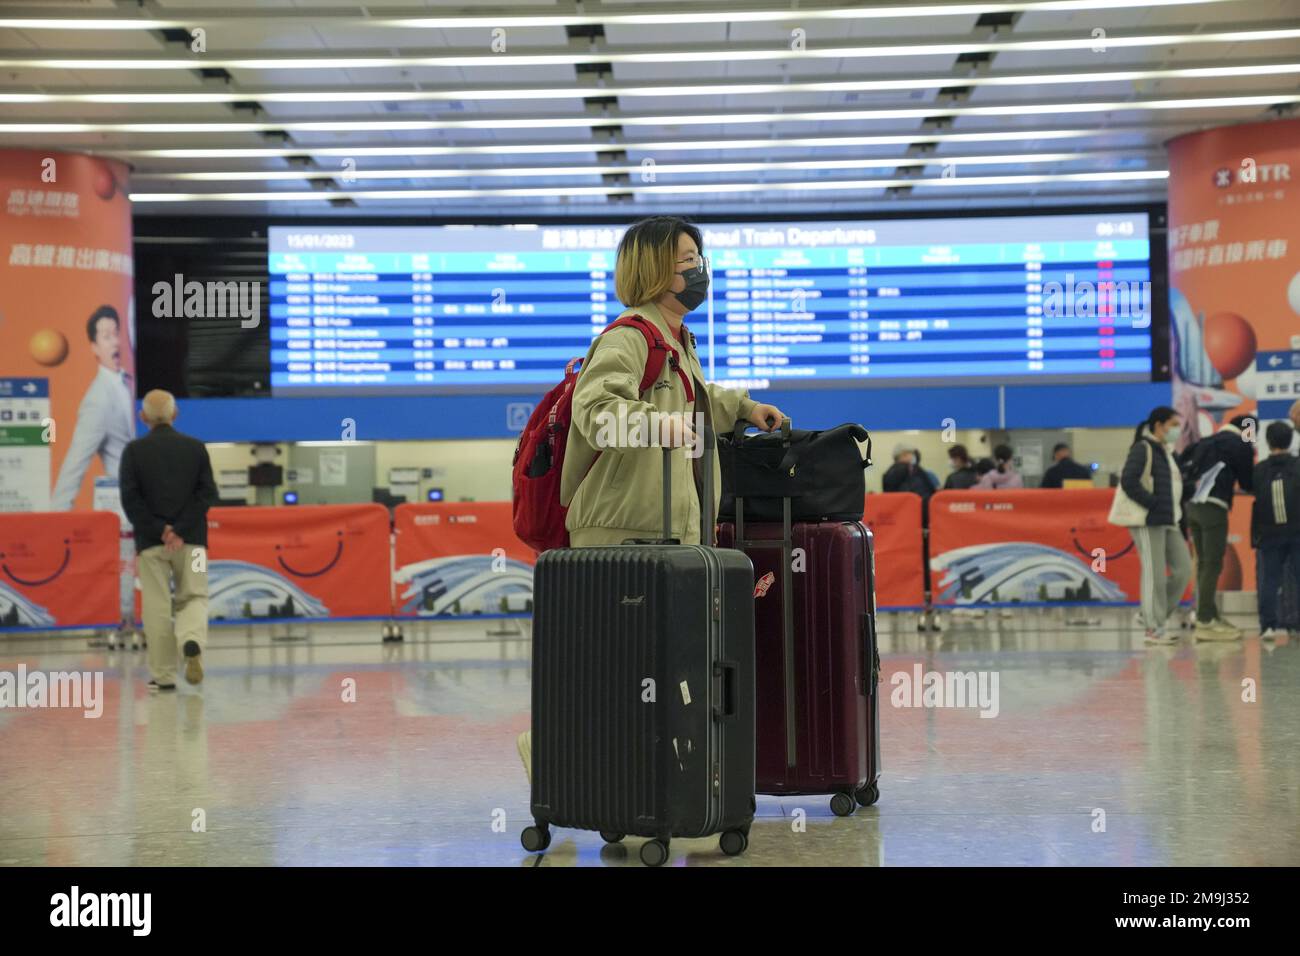 Le premier lot de passagers sortants attend de monter à bord du train pour la Chine continentale à la gare de Hong Kong West Kowloon en Jordanie. La liaison ferroviaire à grande vitesse de Hong KongHH reprend pour la première fois en trois ans après que Pékin ait assoupli cette restriction. La jambe de Hong Kong a été en service pendant environ 16 mois avant la fermeture en janvier 2020 en raison de la pandémie Covid-19. 15JAN23 SCMP / Sam Tsang Banque D'Images